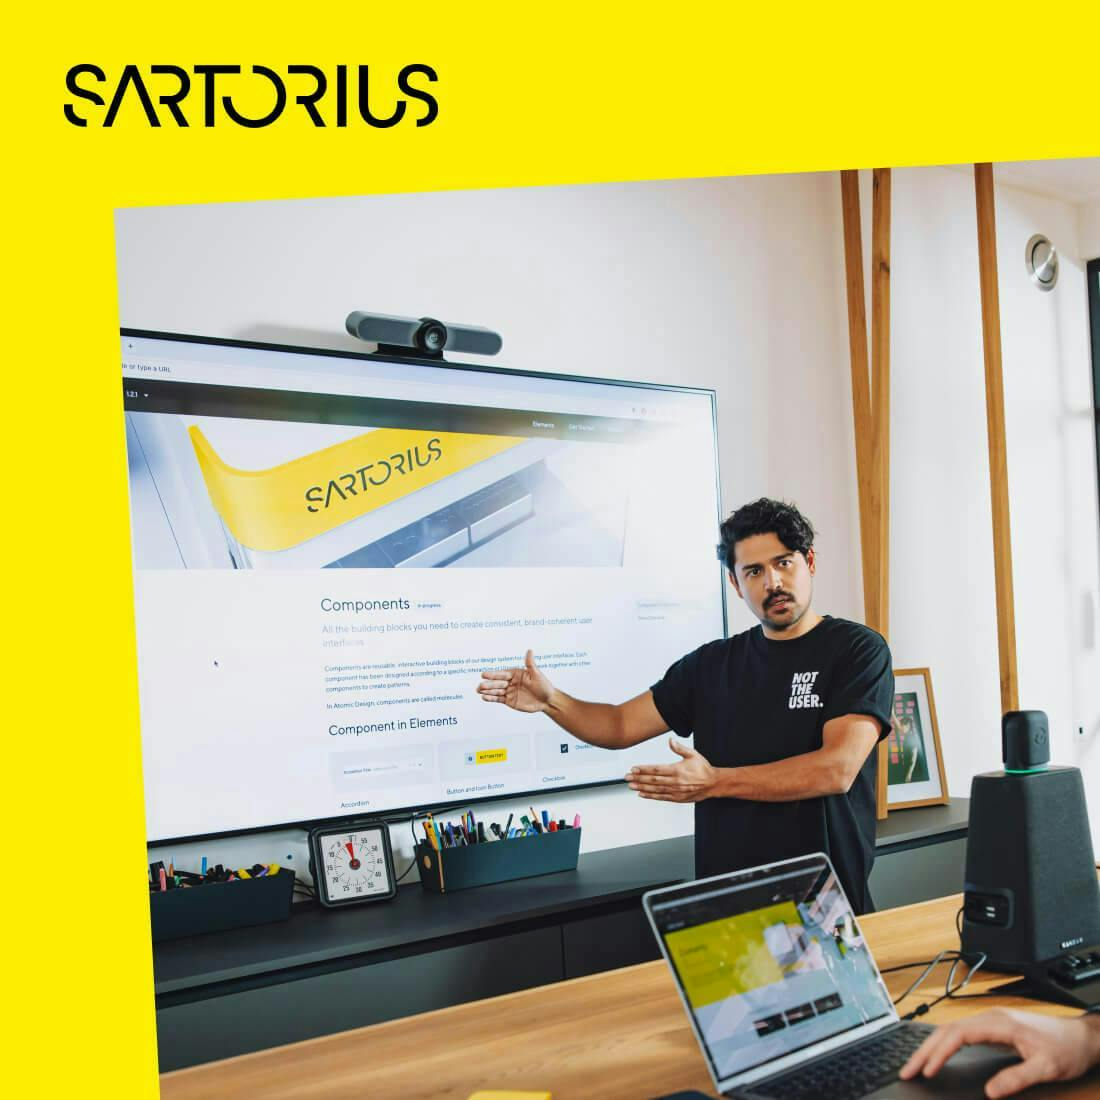 Best Practice Sartorius für digitale Produktentwicklung mit einem konsistenten Designsystem